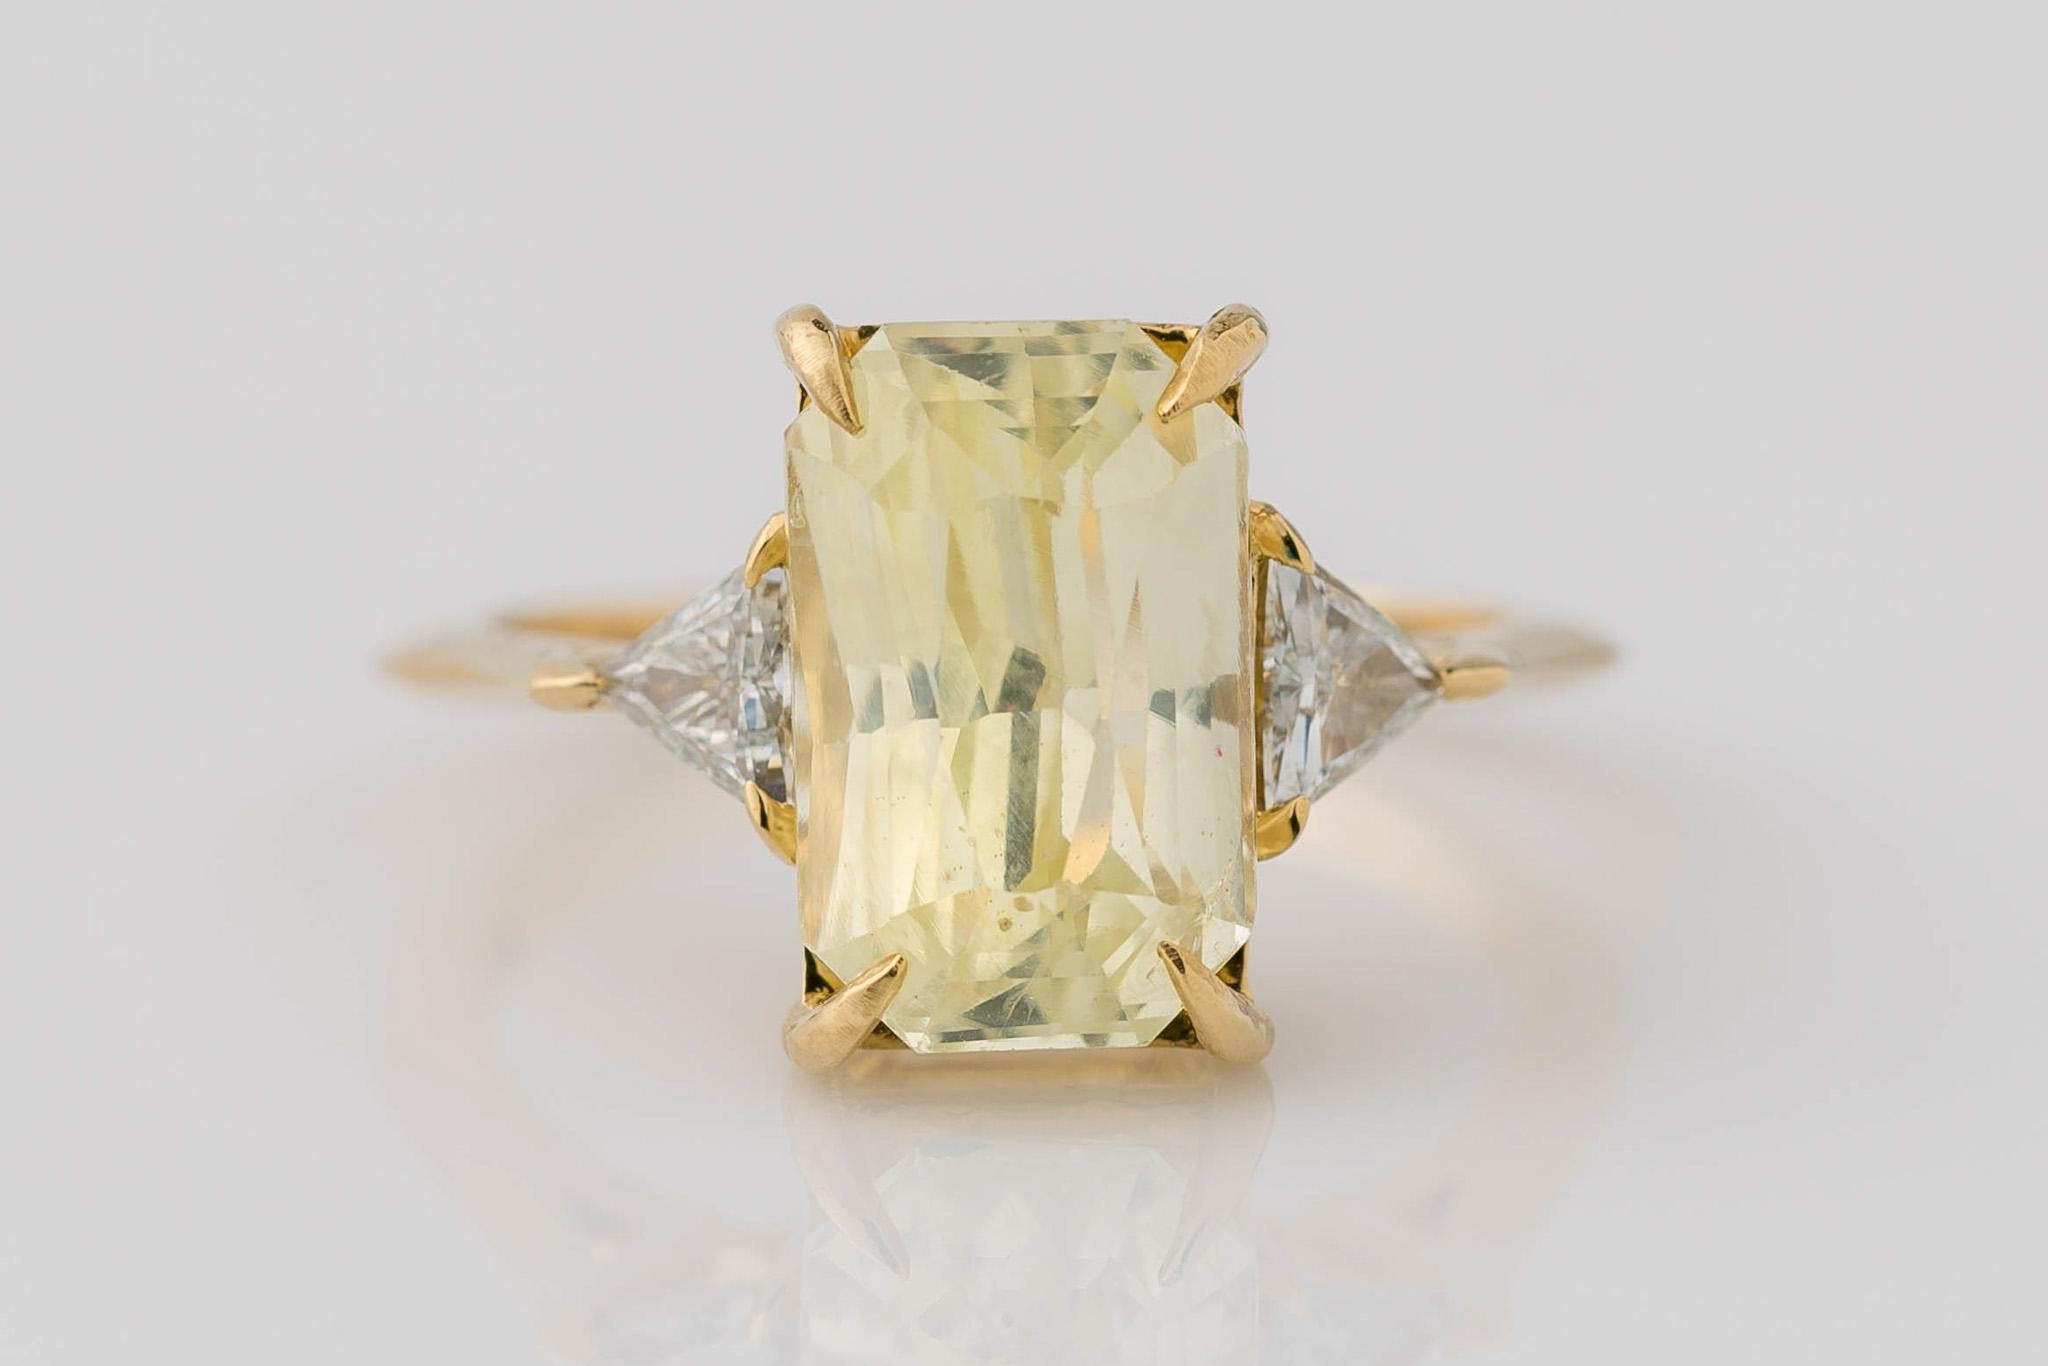 Erleben Sie unvergleichliche Eleganz mit unserem 3-Stein-Ring aus 18 Karat Gelbgold mit gelbem Saphir im Brillantschliff. Das Herzstück, ein völlig natürlicher und seltener unerhitzter Saphir mit einem Gewicht von 4,73 Karat, besticht durch seinen